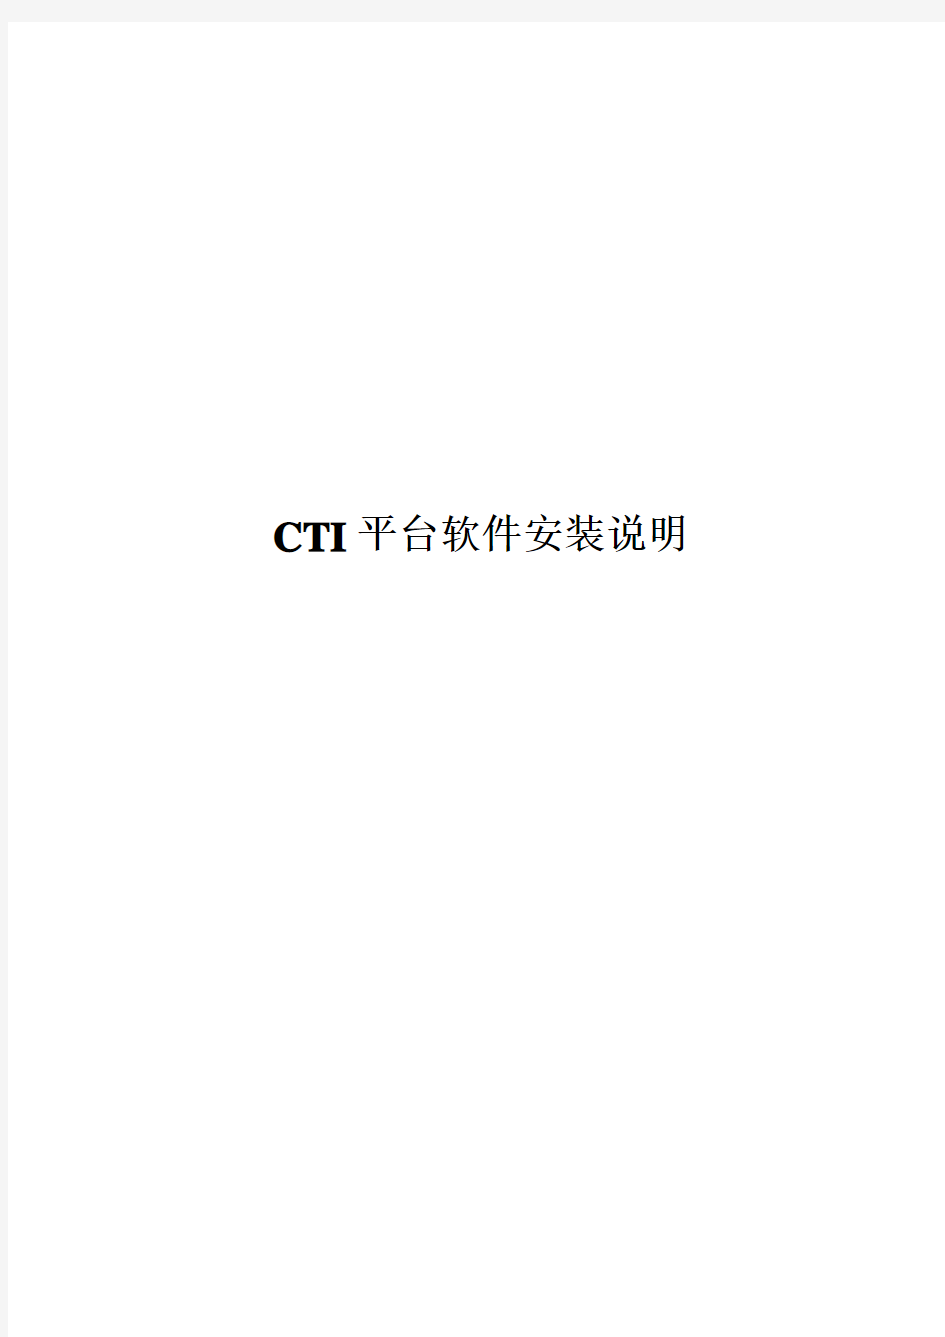 CTI平台软件安装说明